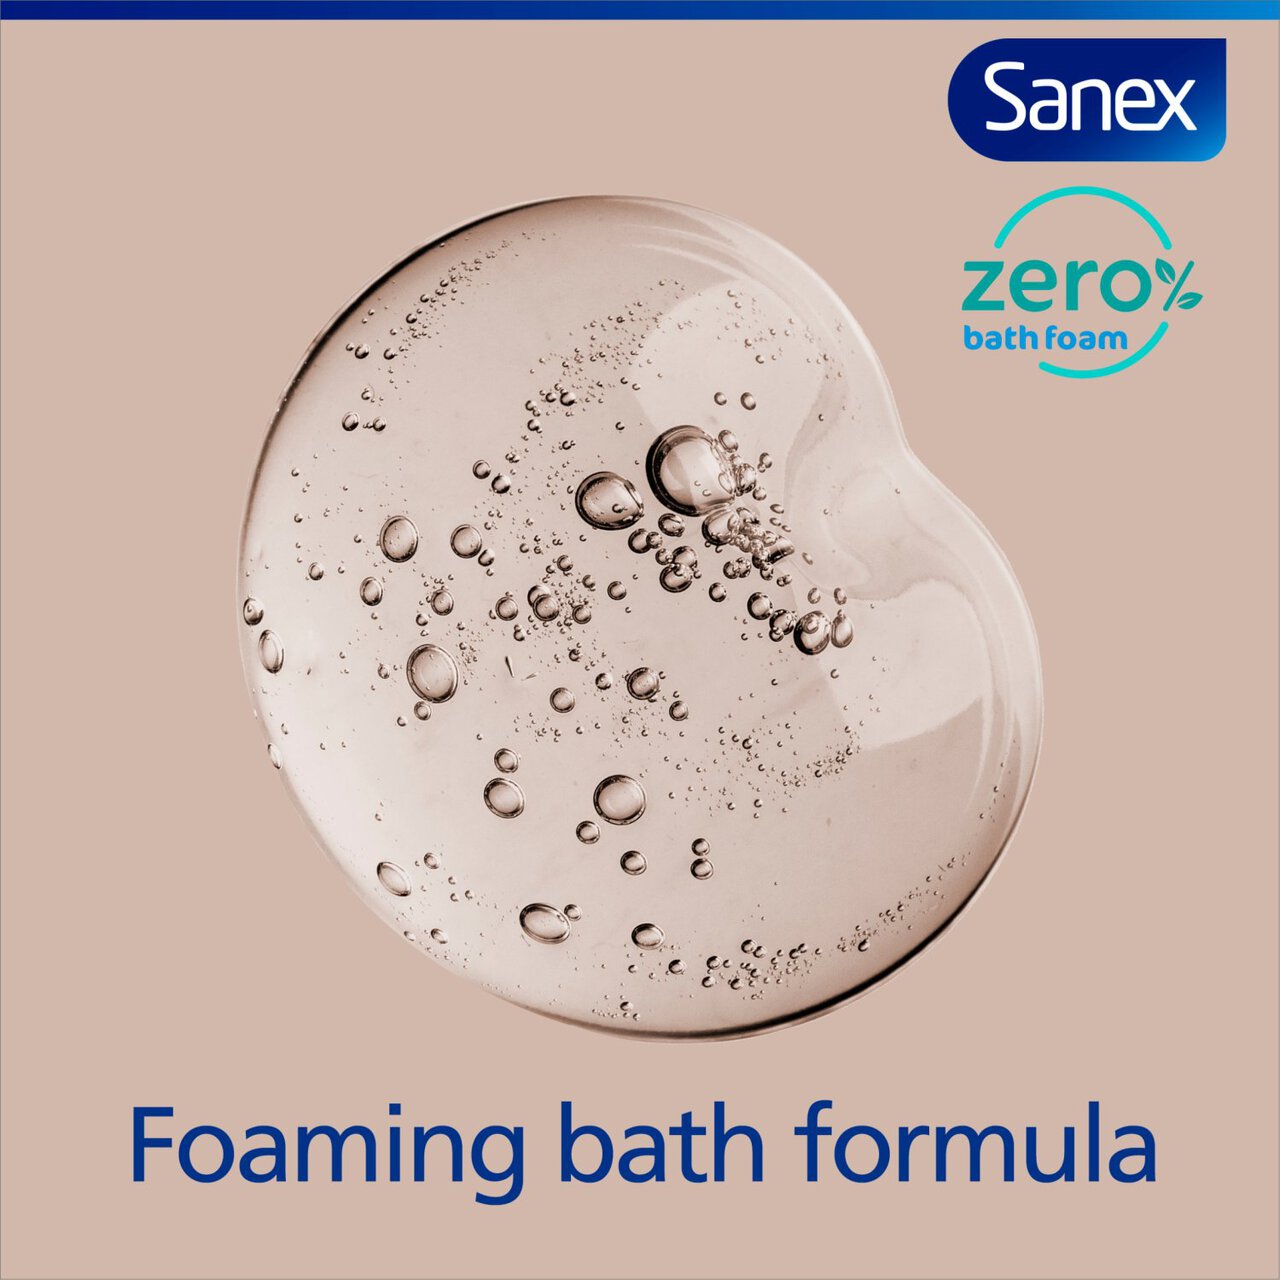 Sanex Zero % Normal Skin Bubble Bath Cream 450ml